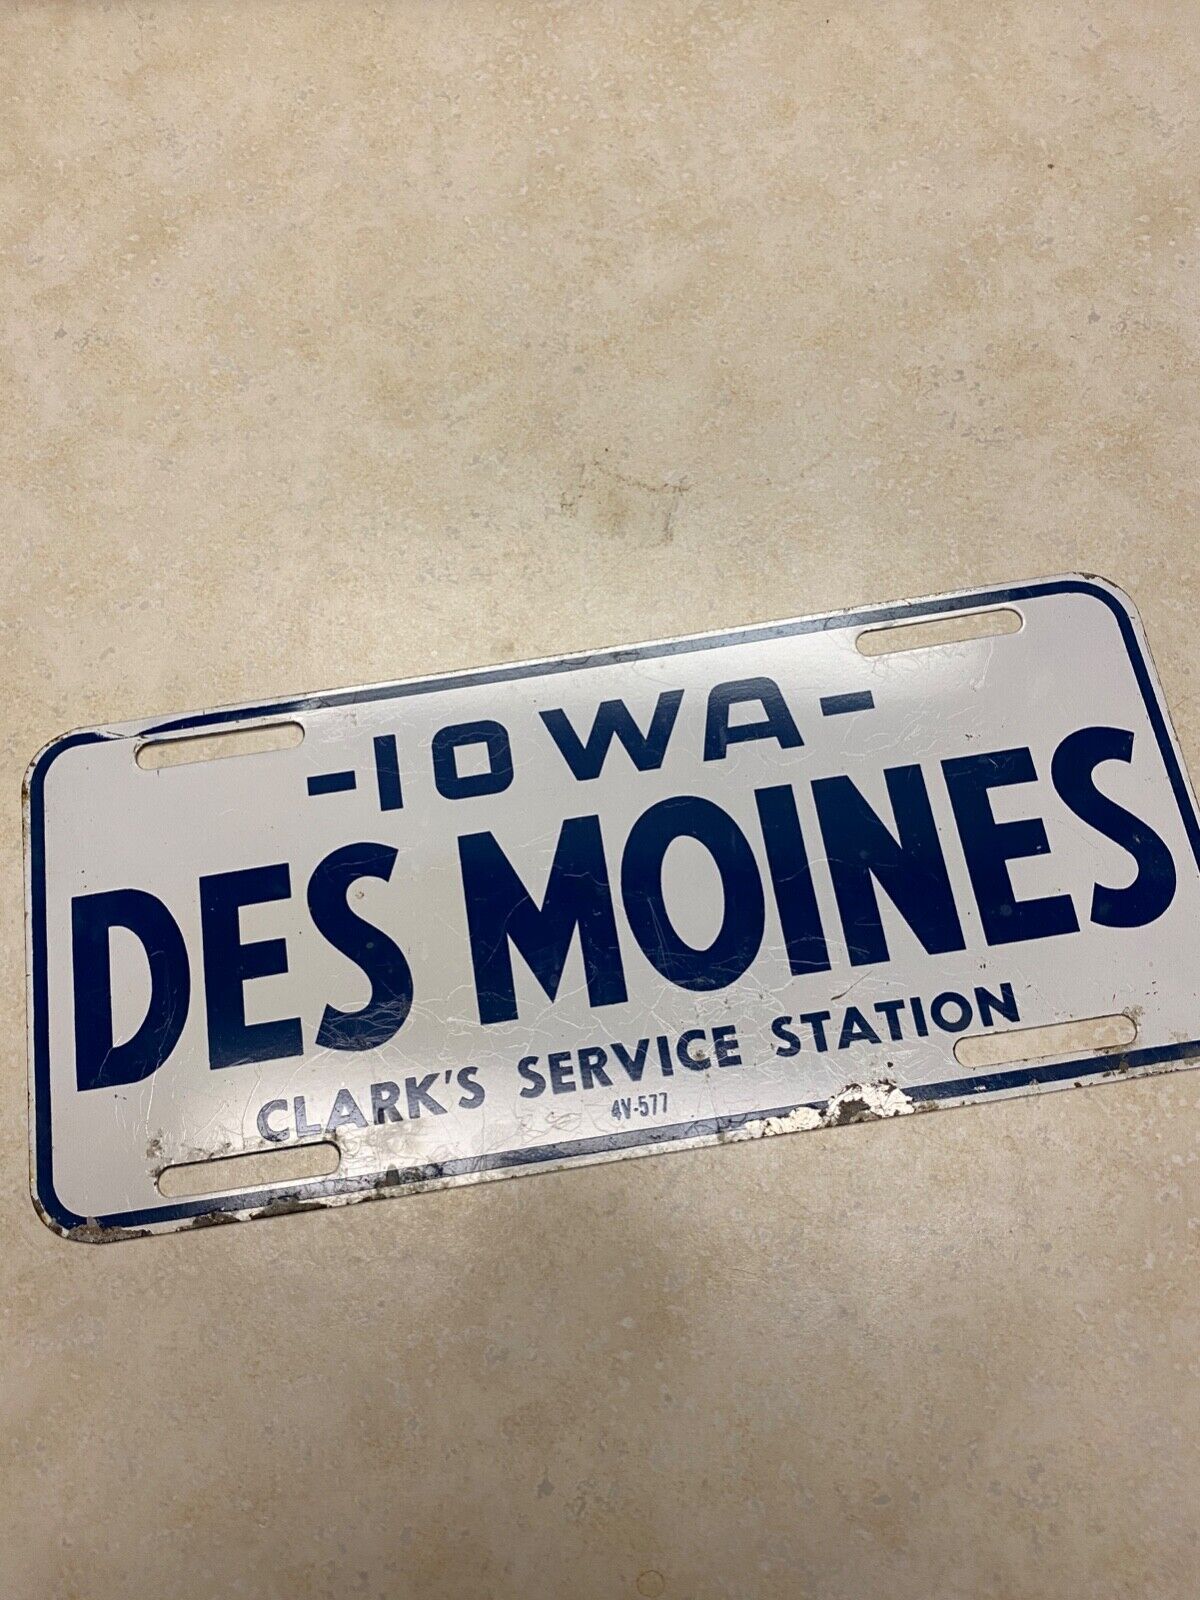 Vintage Clark's Service Station Des Moines Iowa Plate